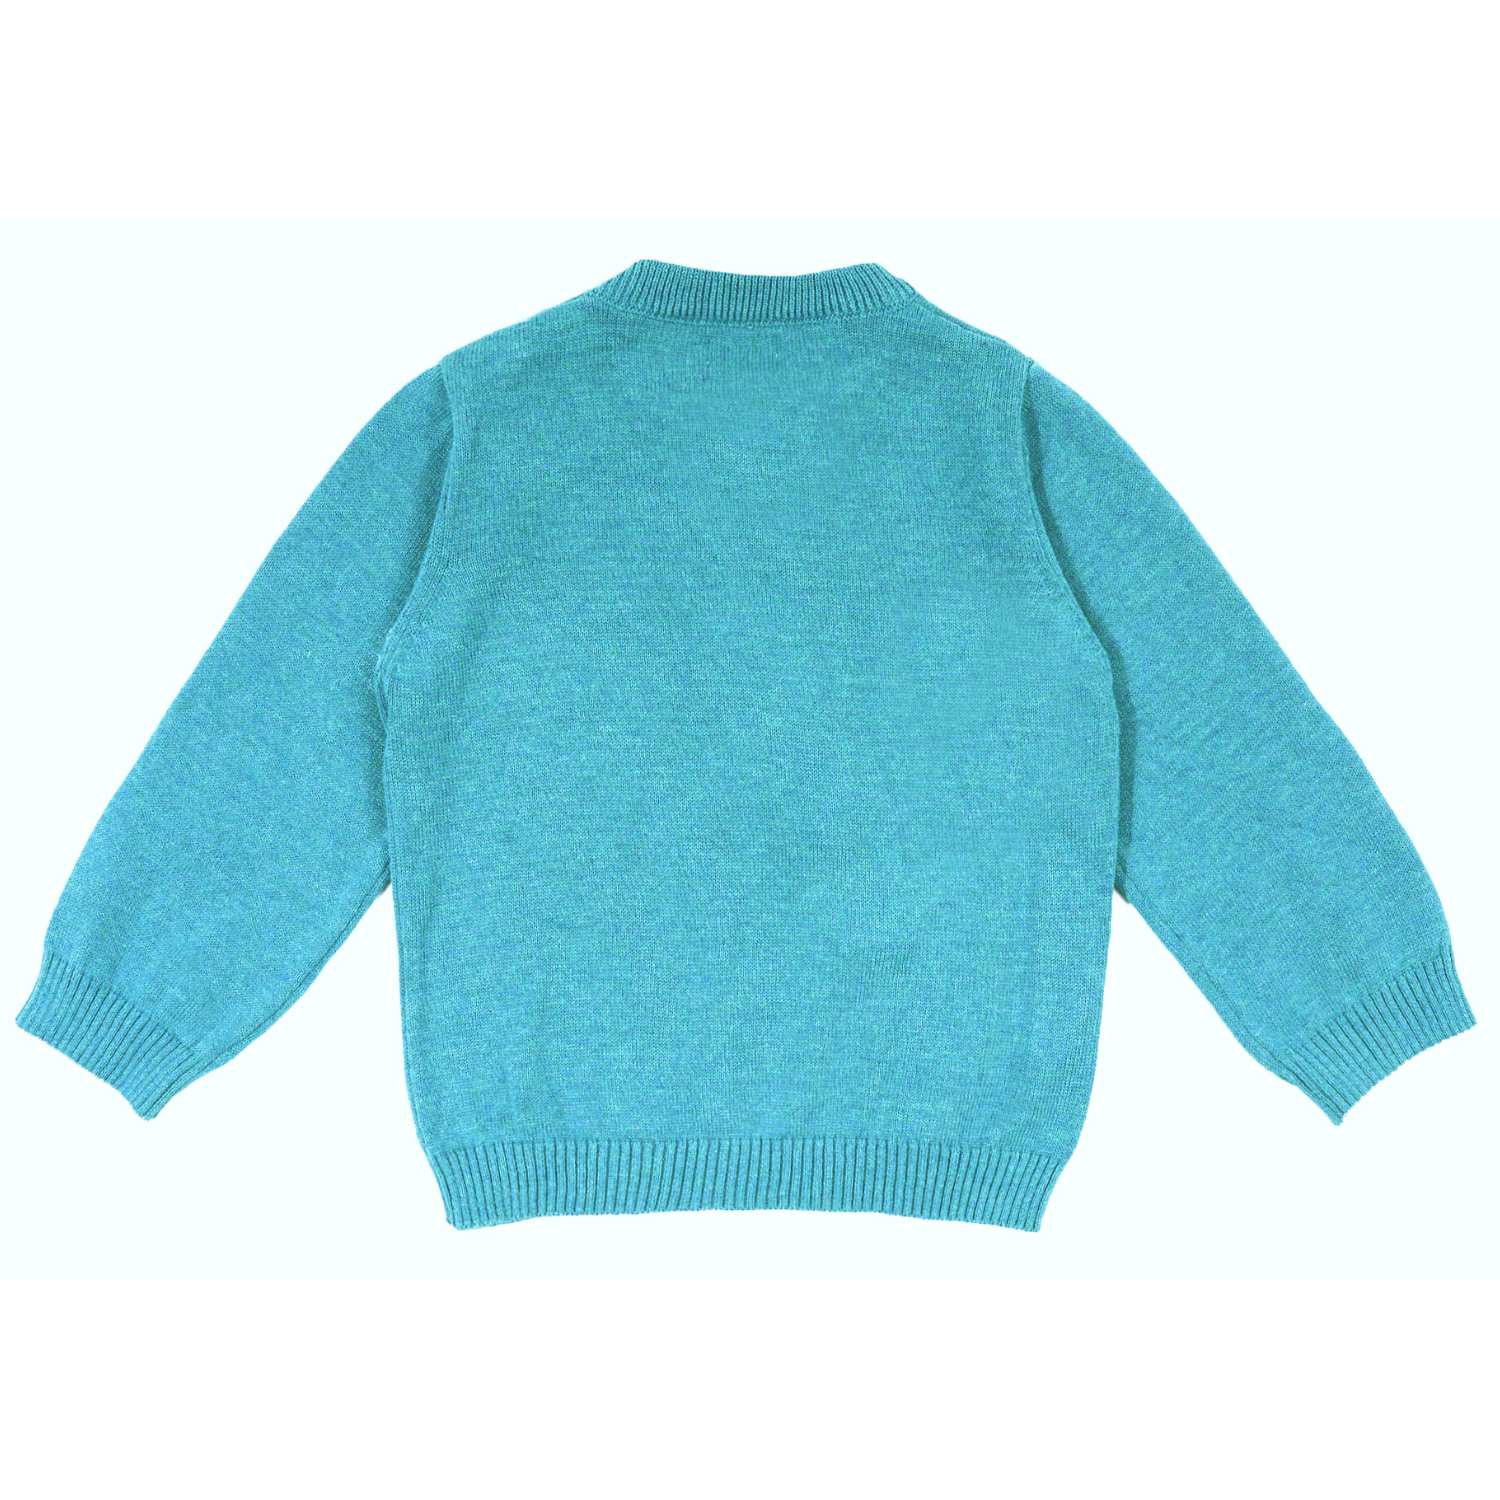 Blissful Reindeer Teal Sweater – Greendeer